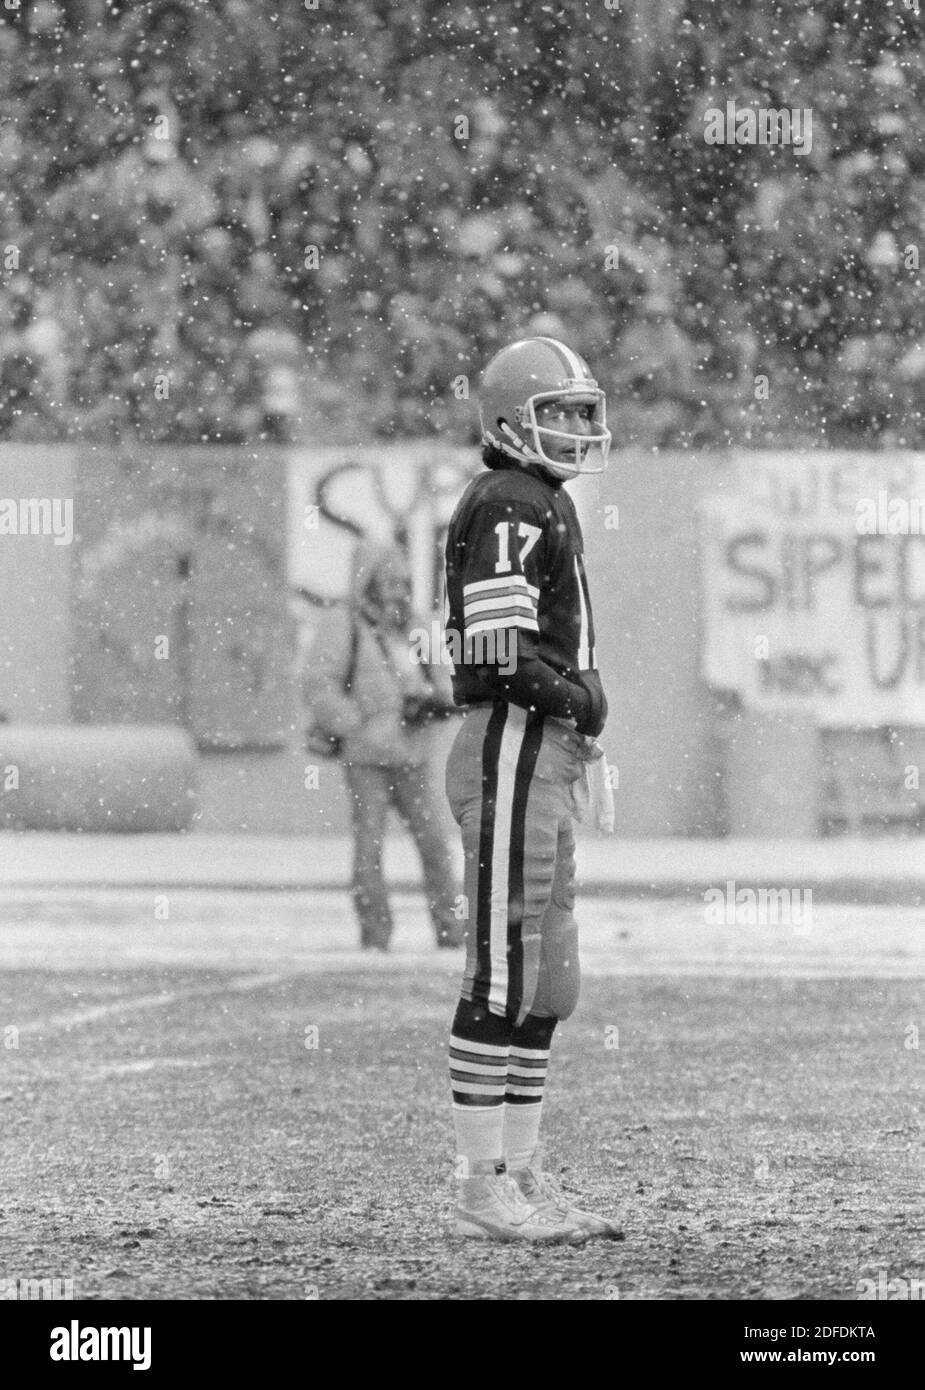 Le quarterback des Cleveland Browns Brian Sipe fait une pause lors d'une chute de neige lors d'un match de fin de saison au stade Cleveland en décembre 1980. Les Browns, connus alors sous le nom de Karciac Kids, ont remporté la division AFC Nord cette année-là. Ernie Mastroianni photo. Banque D'Images